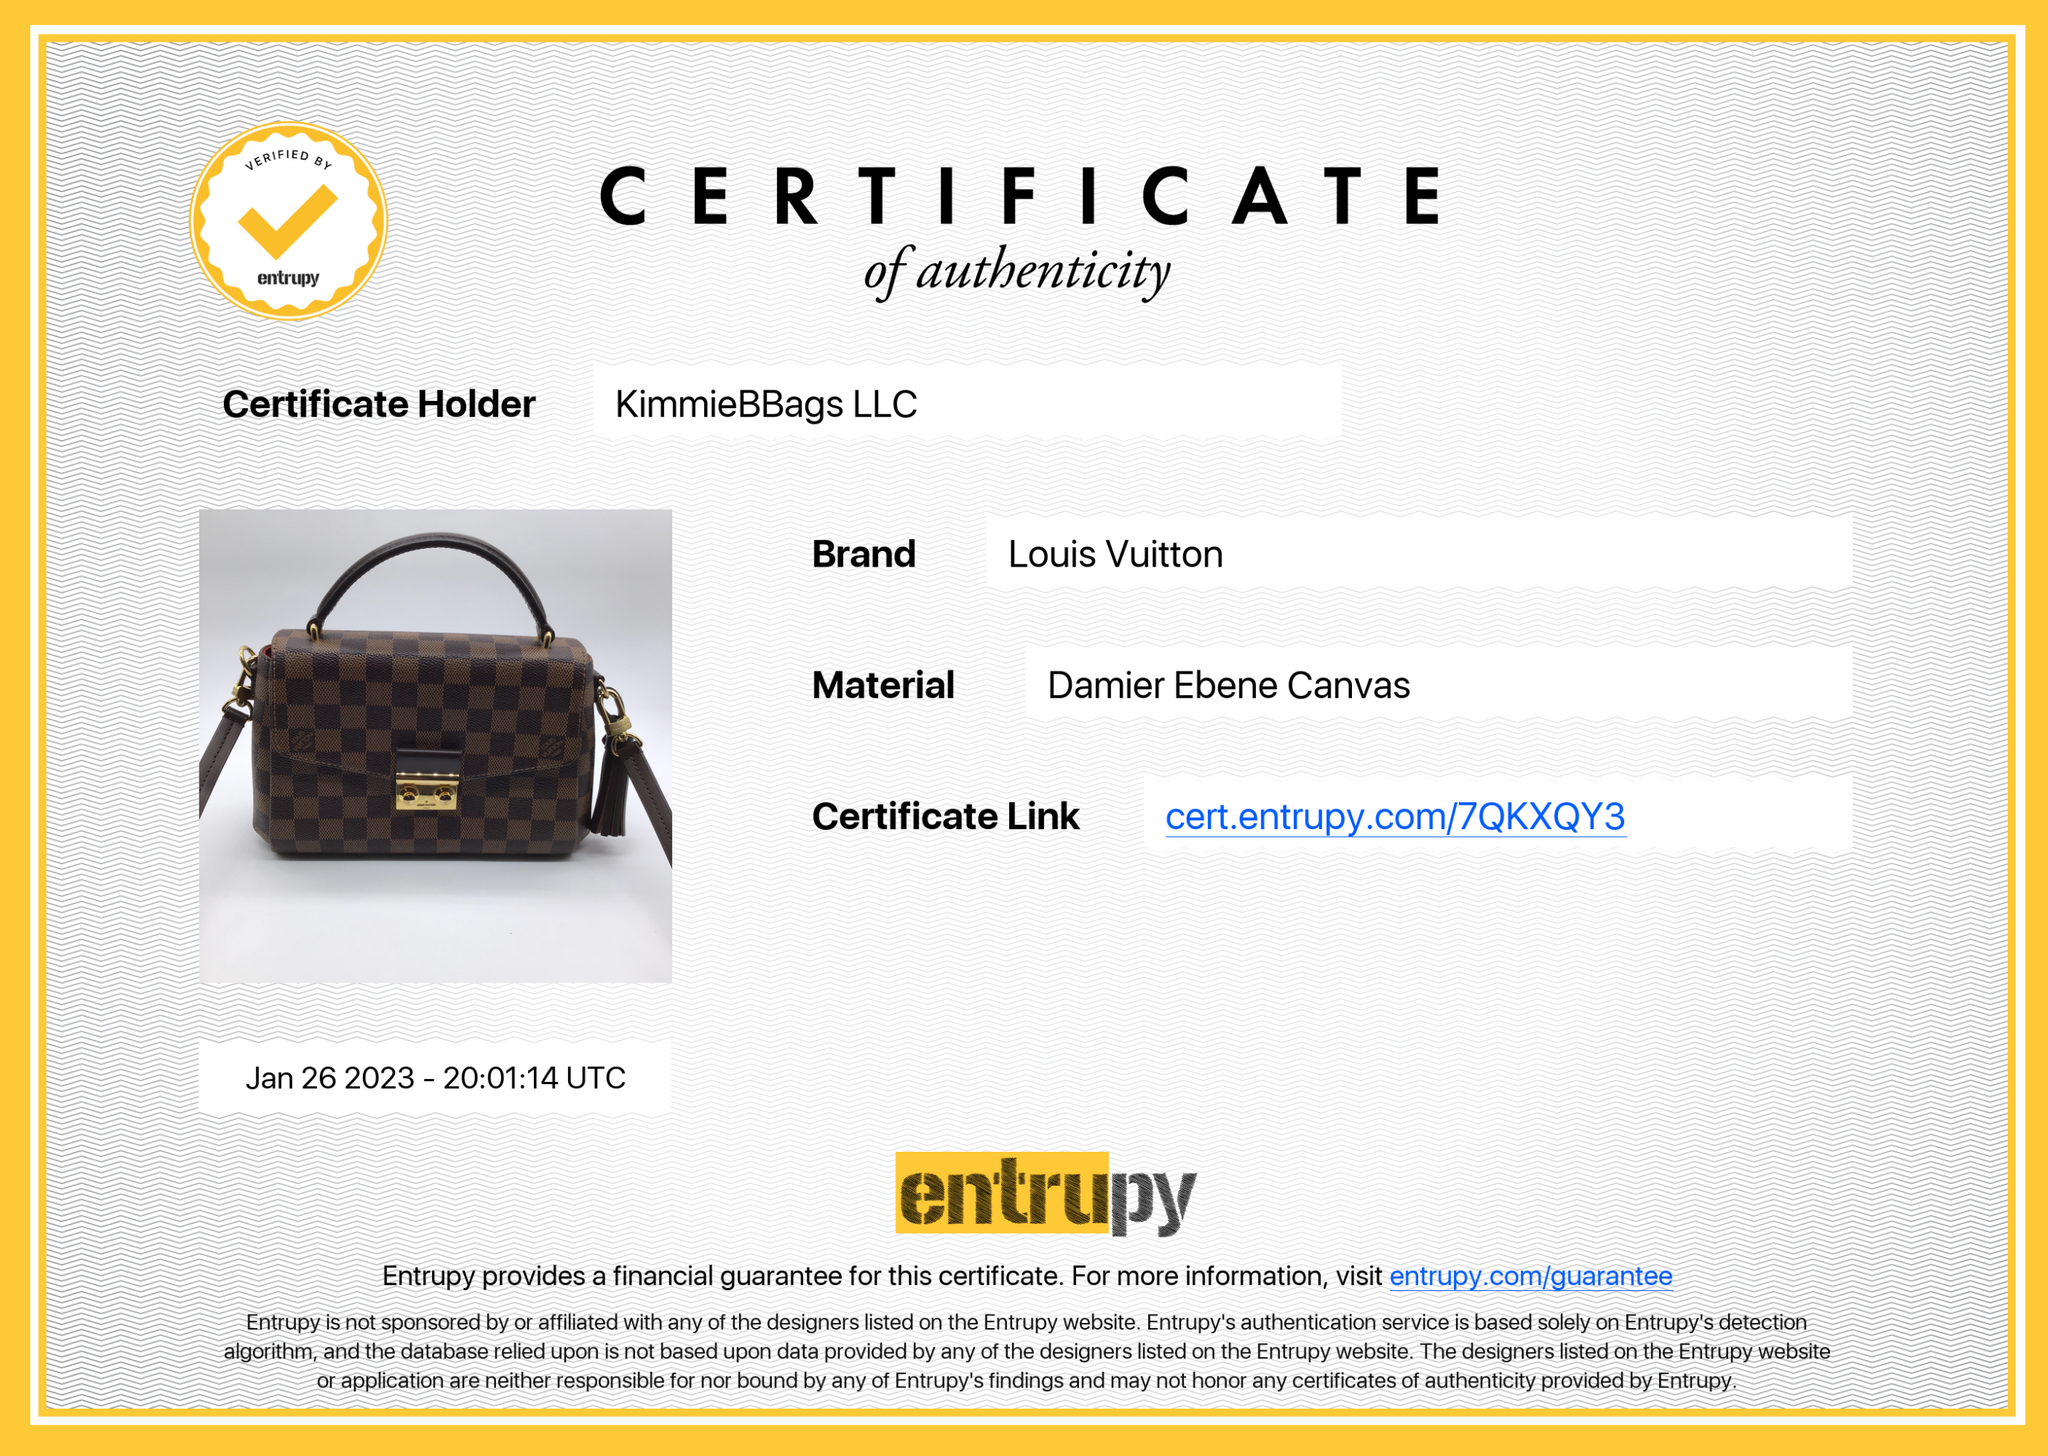 Louis Vuitton Damier Ebene Croisette Shoulder Bag - FINAL SALE